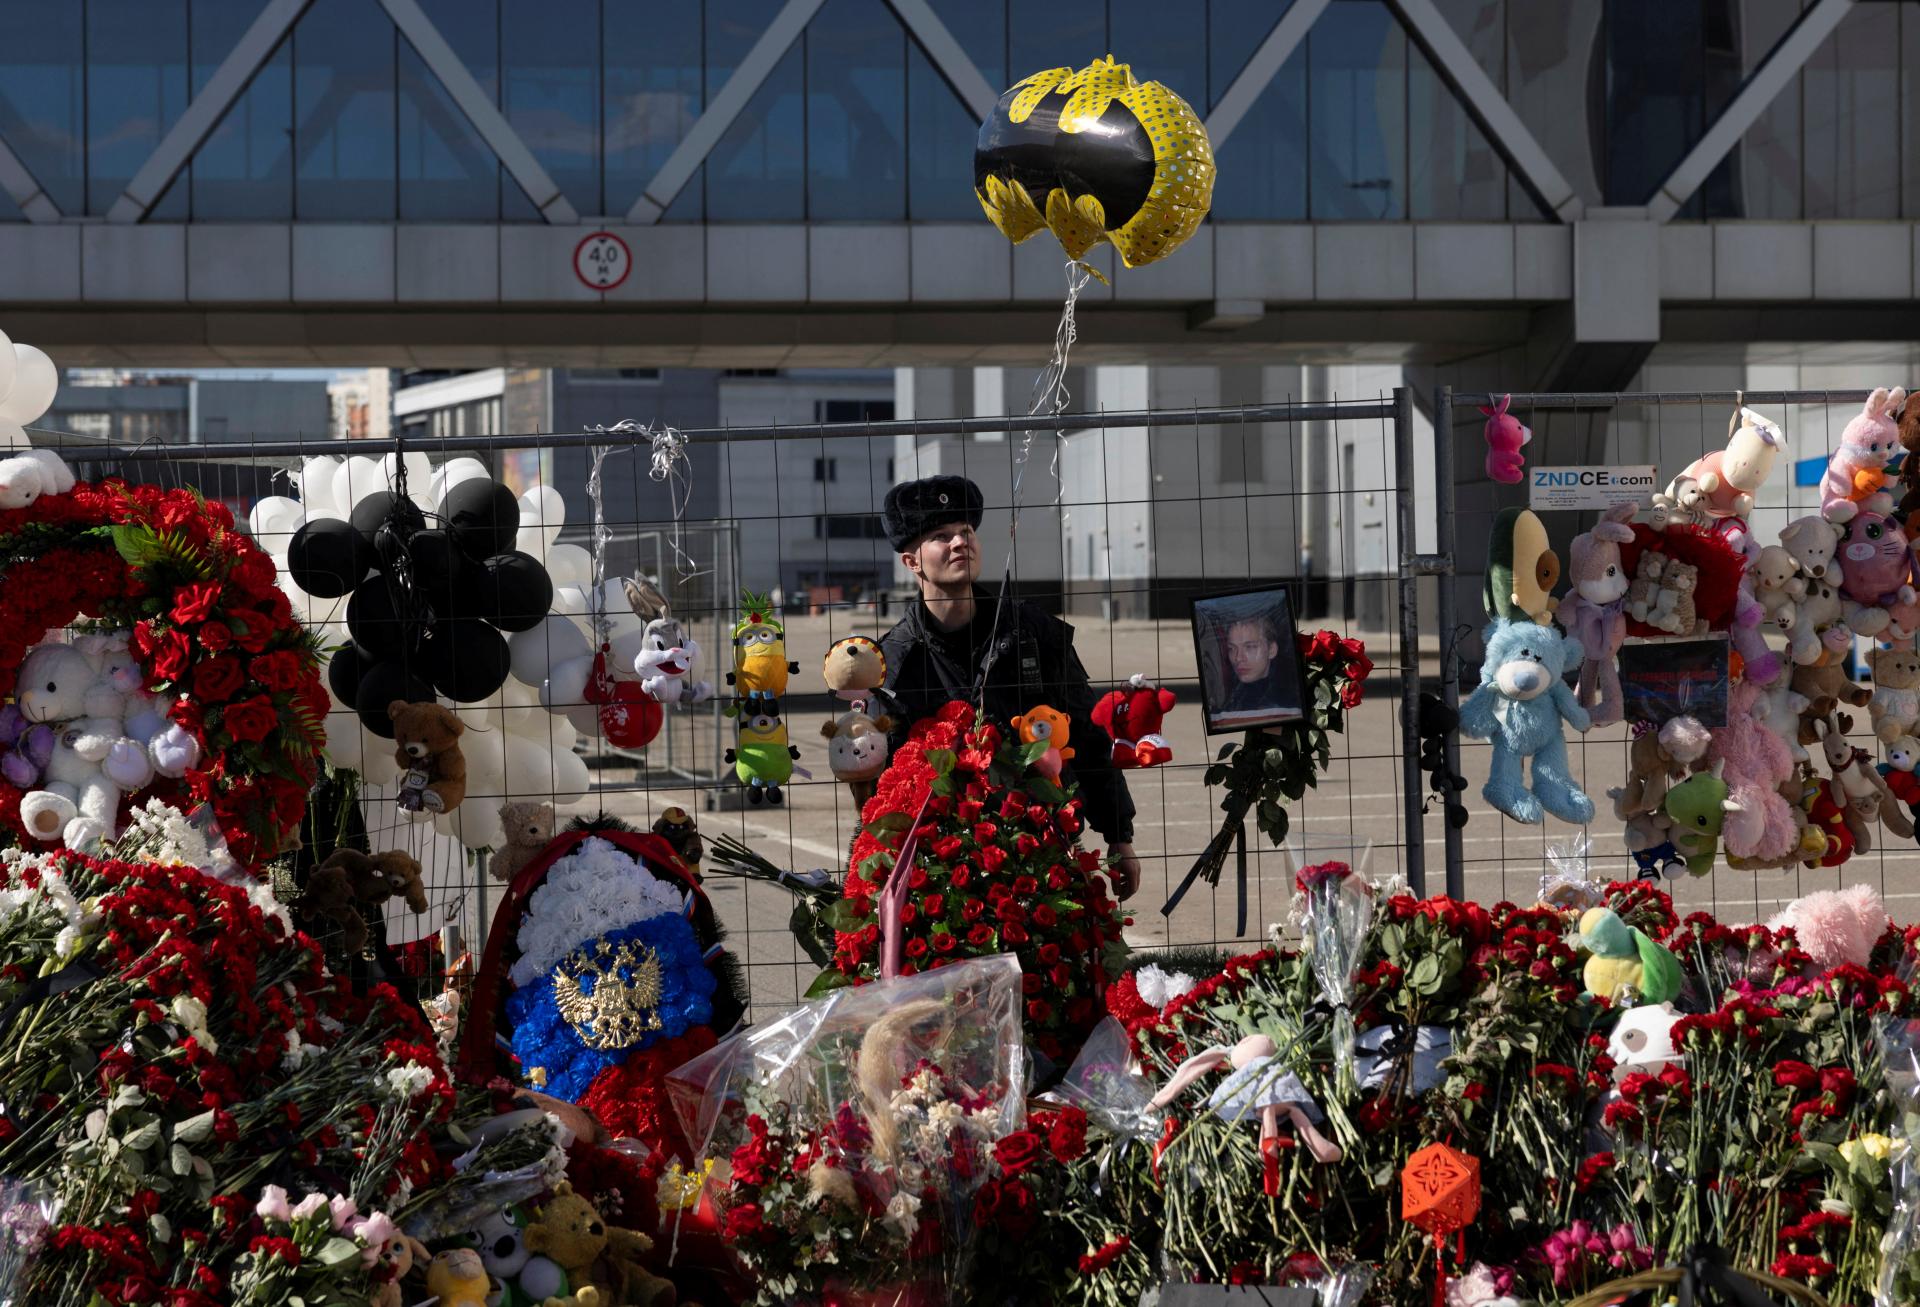 Za útokom v Moskve je Islamský štát, uviedol Biely dom. Ruskú verziu považuje za nezmysel